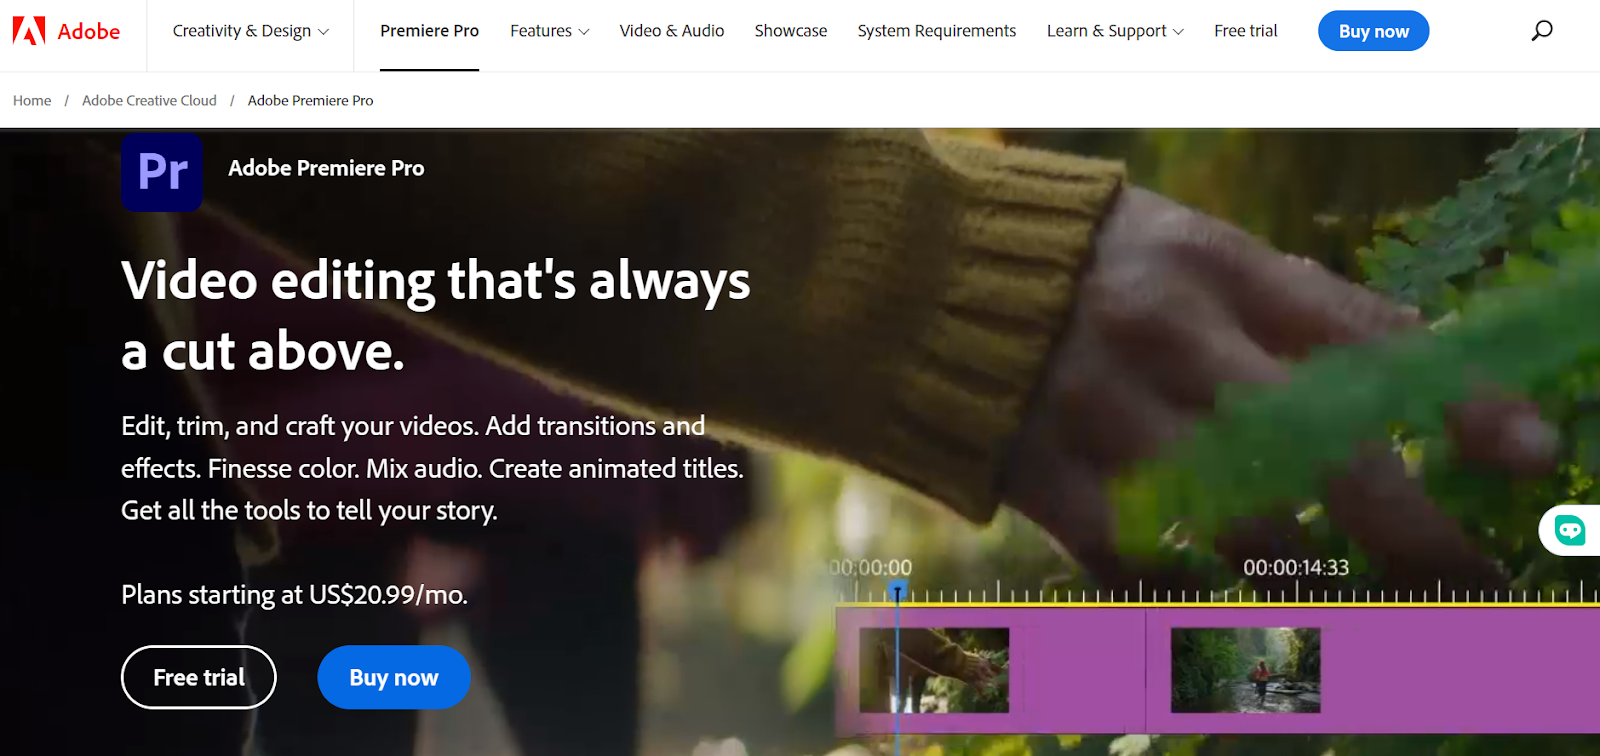 Adobe Premiere Pro: Advanced na AI video editor.